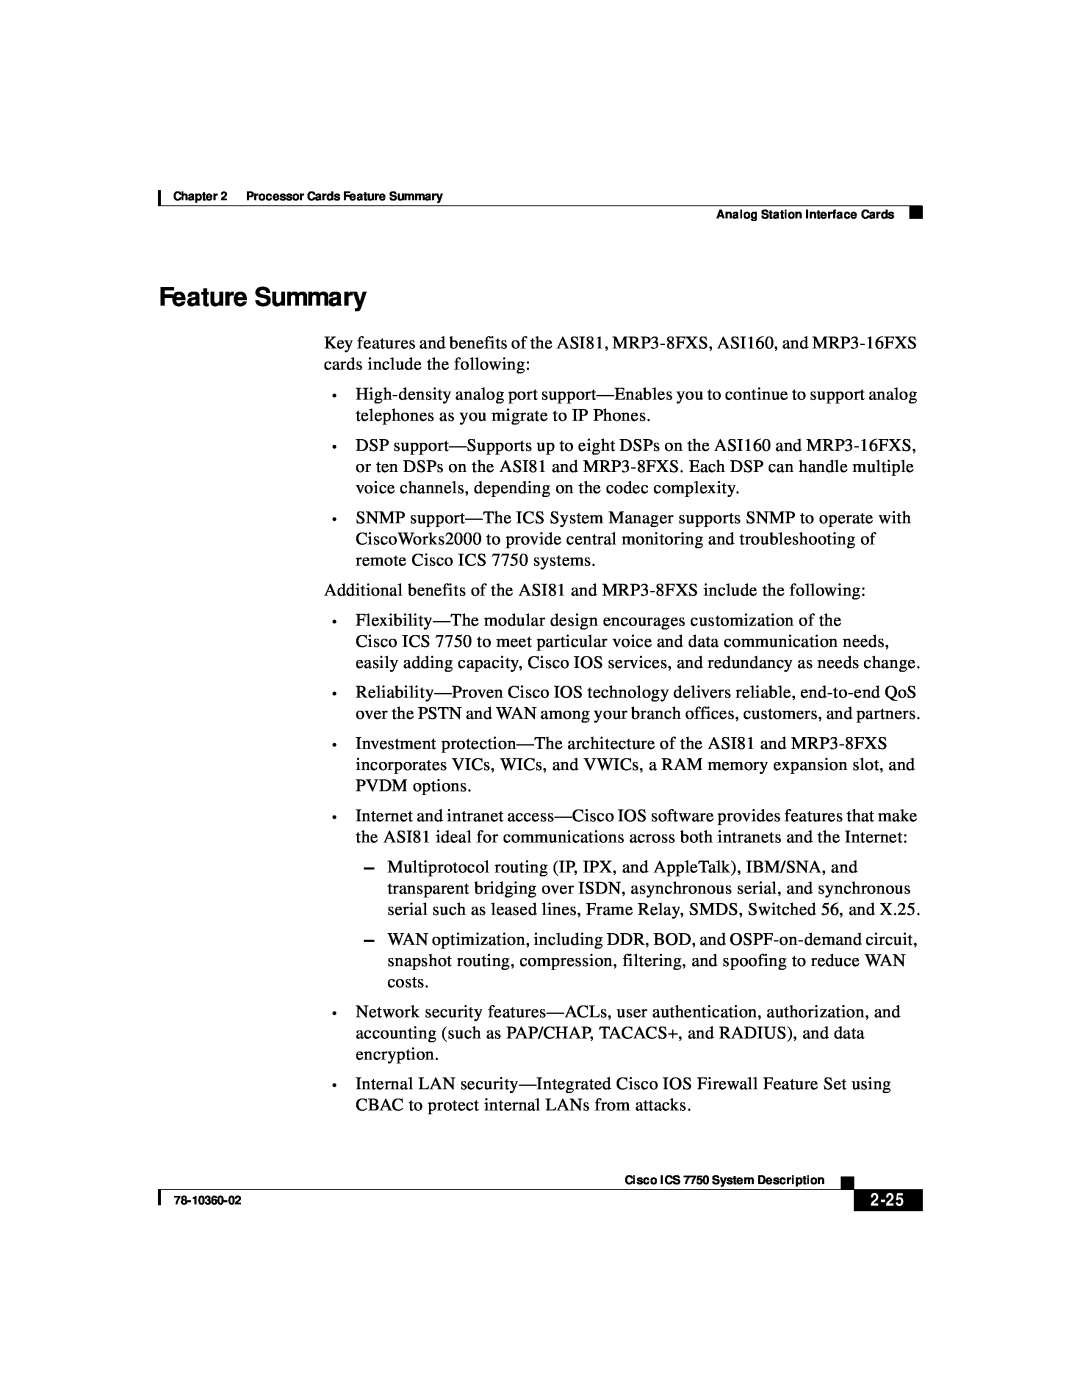 Cisco Systems ICS-7750 manual Feature Summary, 2-25 